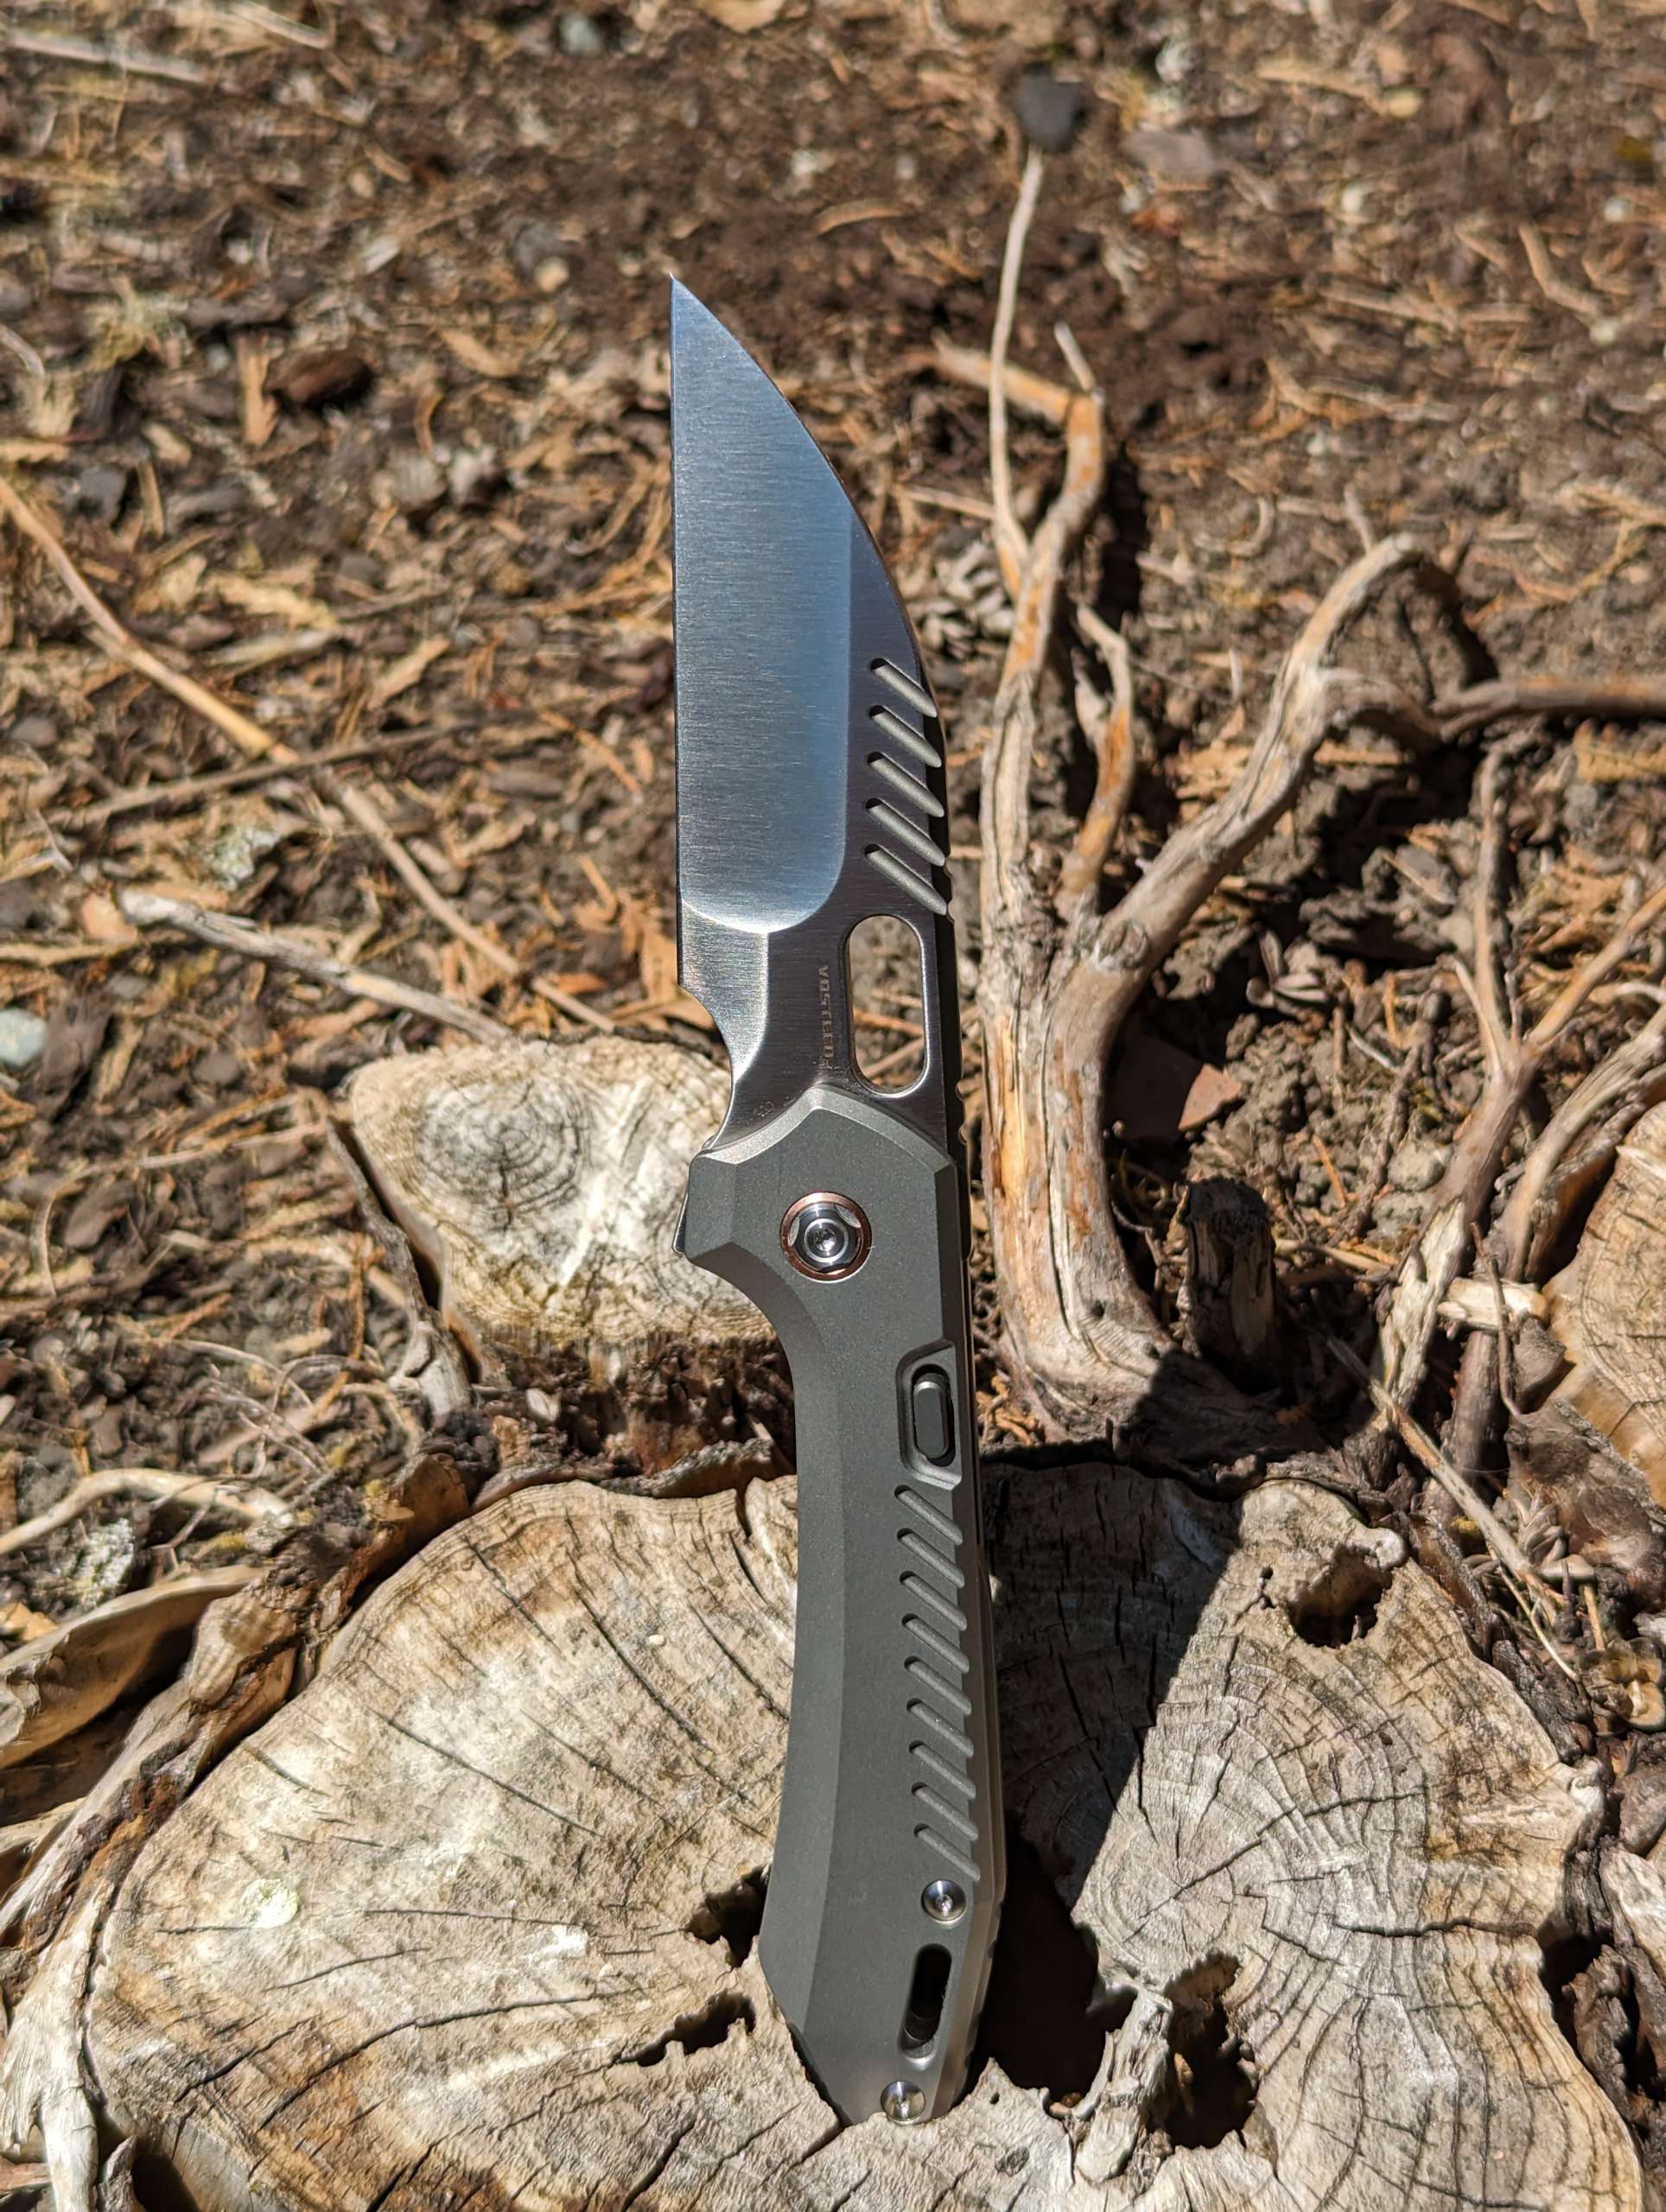 The Best Dirt Cheap Knives